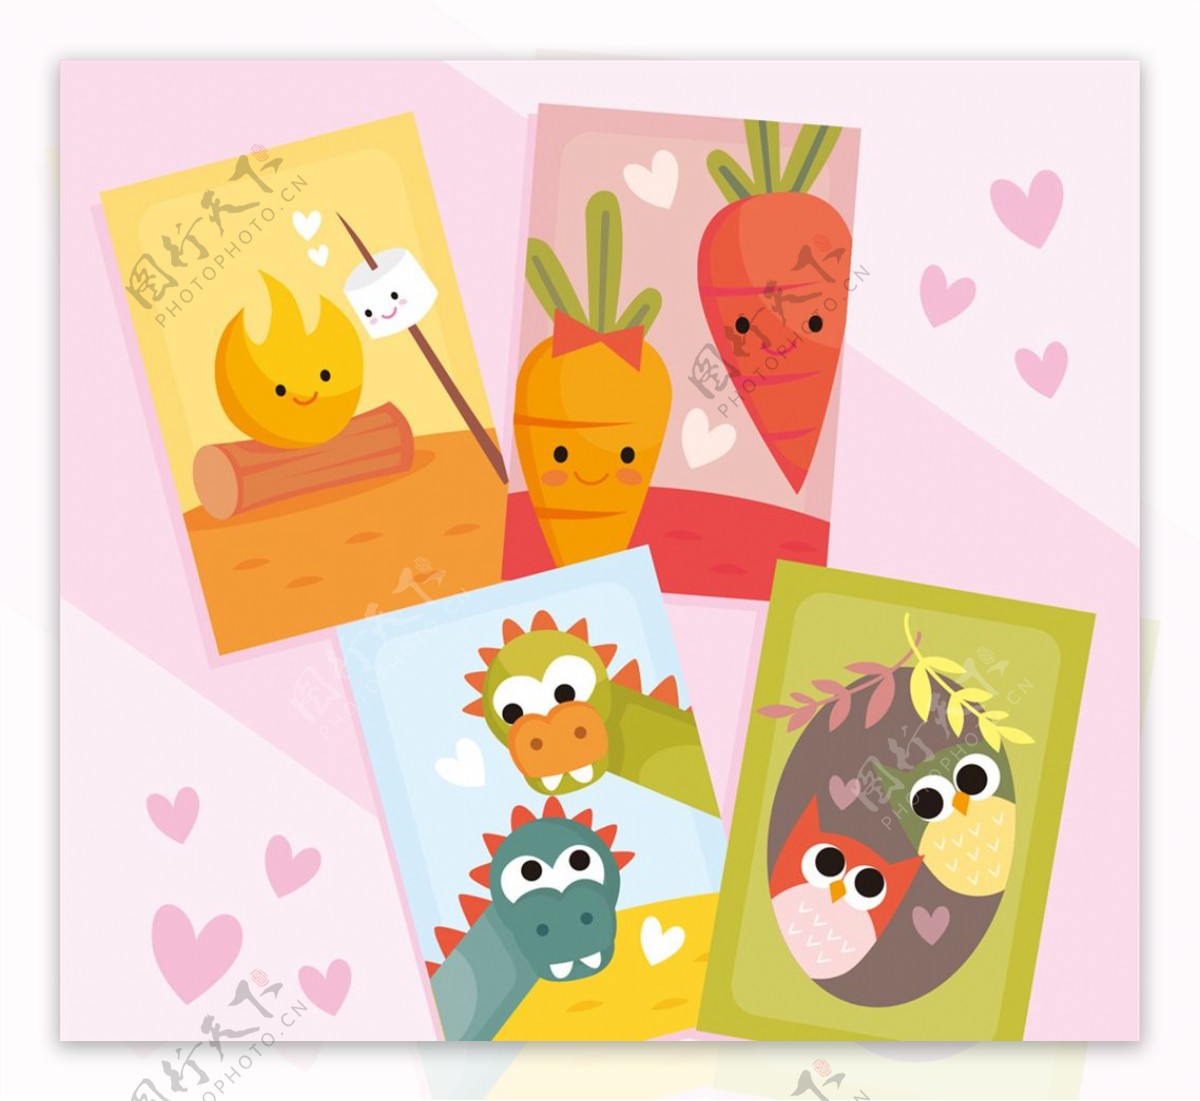 4款可爱卡通动植物情侣卡片